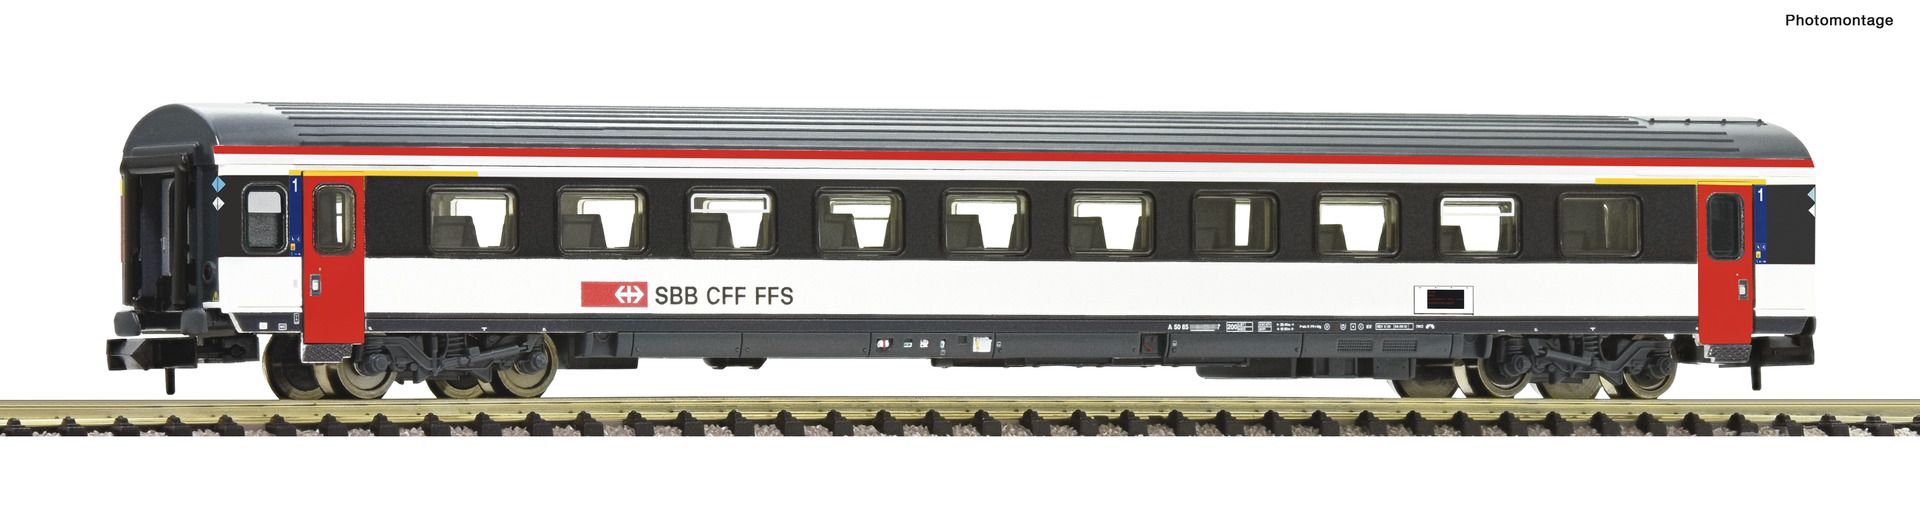 Fleischmann 6260015 - Personenwagen EW-IV, 1. Klasse, SBB, Ep.VI